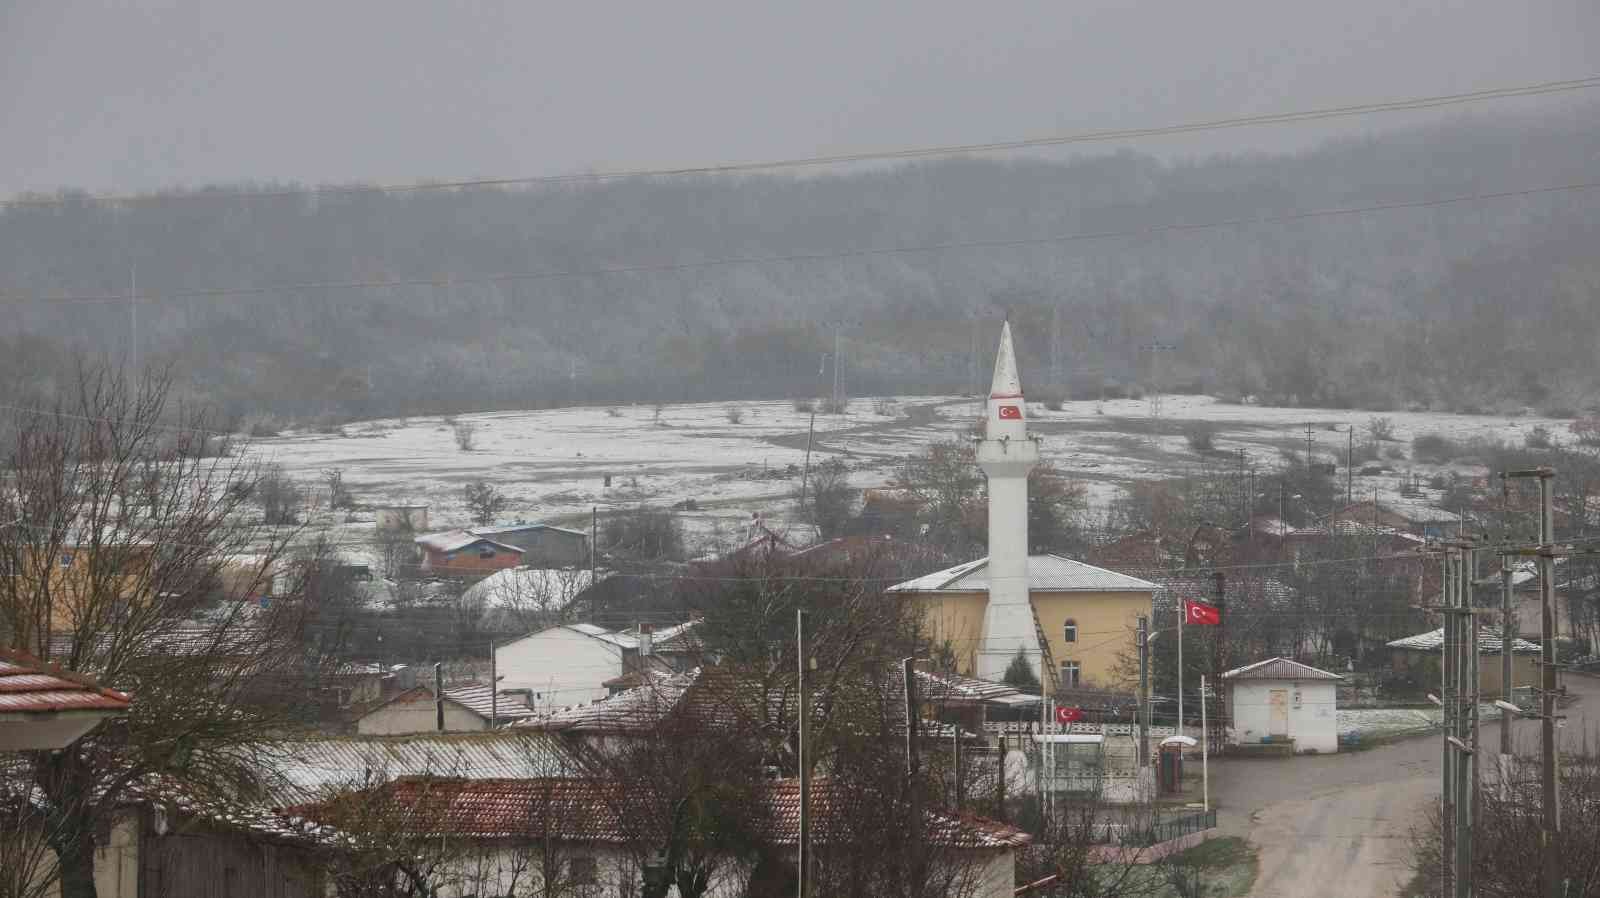 Edirne’de sınır köylerin beyaz örtüsü havadan görüntülendi #edirne